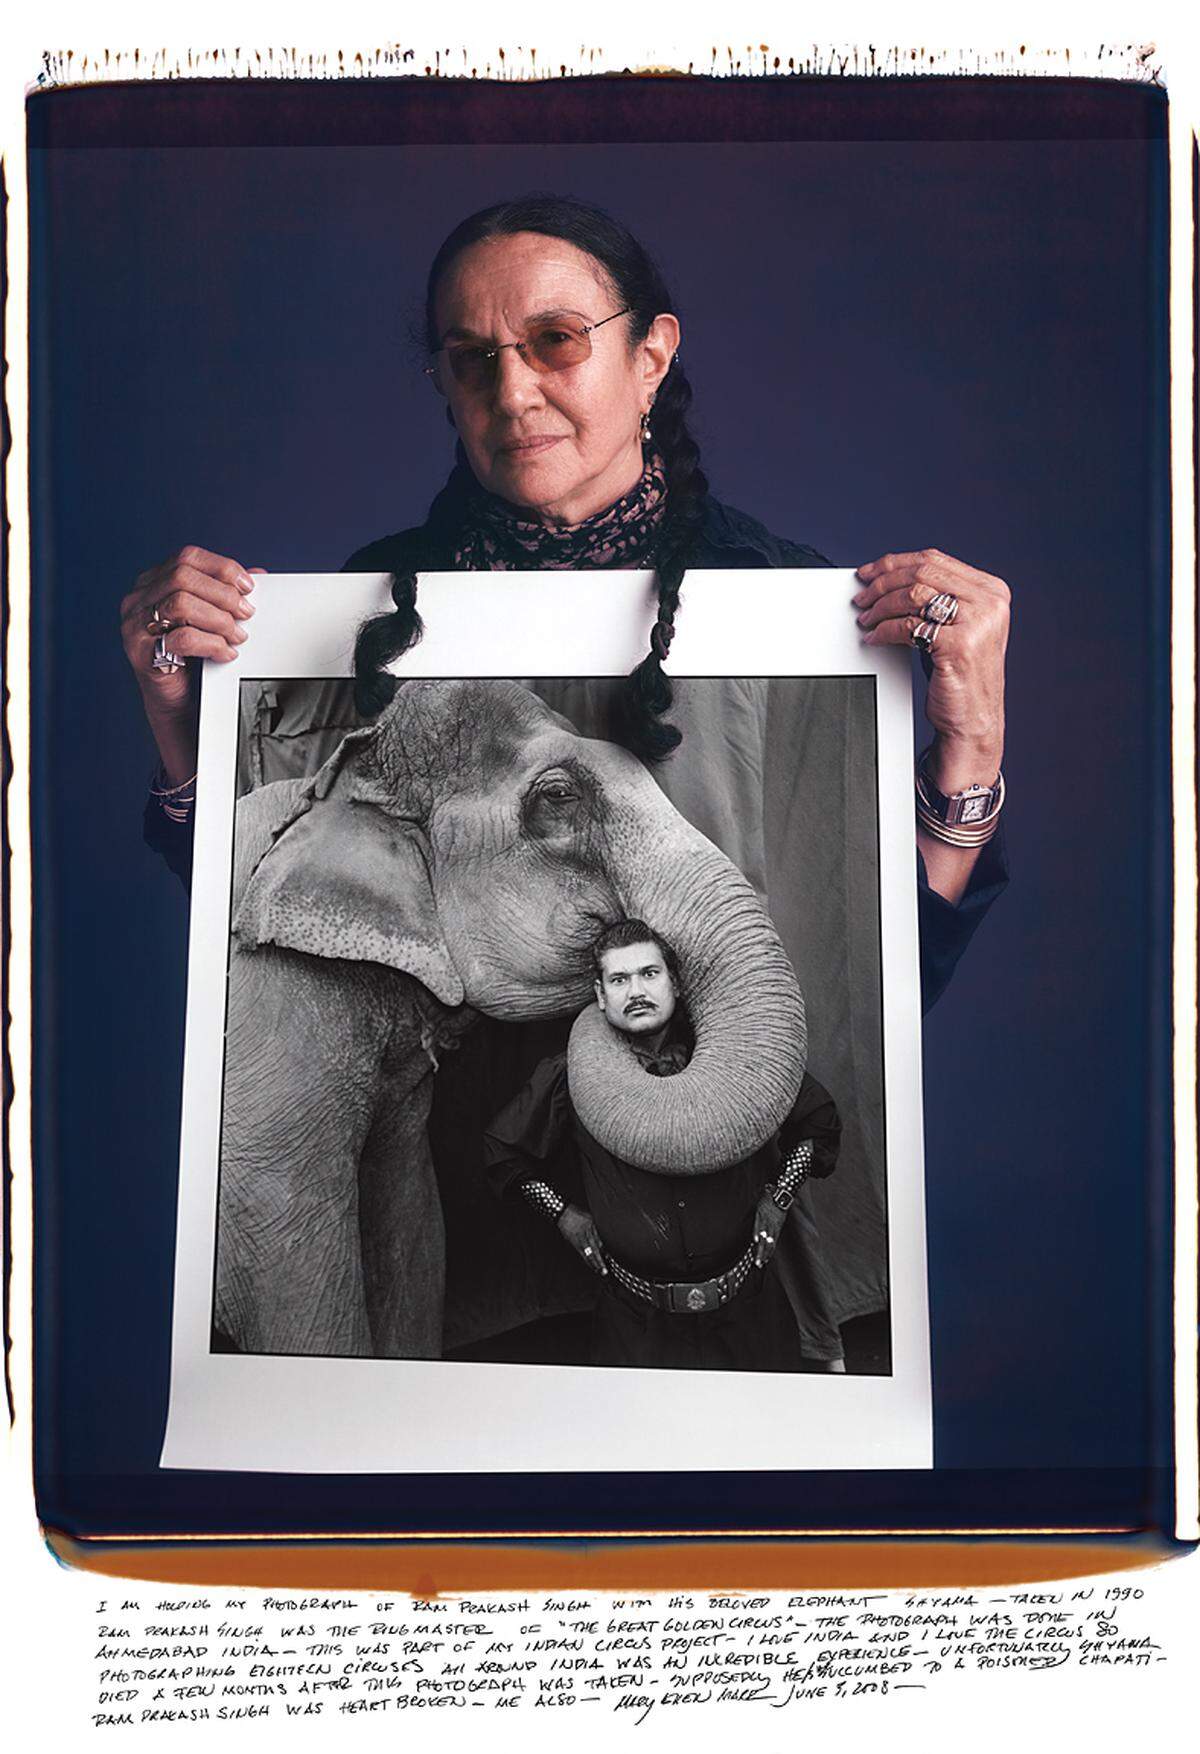 Mary Ellen Mark: Ram Prakash Singh und sein Elefant Shyama. Das Foto entstand 1990 in Indien, wo die US-Fotografin ganze 18 Zirkusse fotografierte. Ein paar Monate nach der Aufnahme starb Shyama. "Das hat Ram Prakash Singh das Herz gebrochen", schreibt Mark unter dem Bild. "Und mir auch."